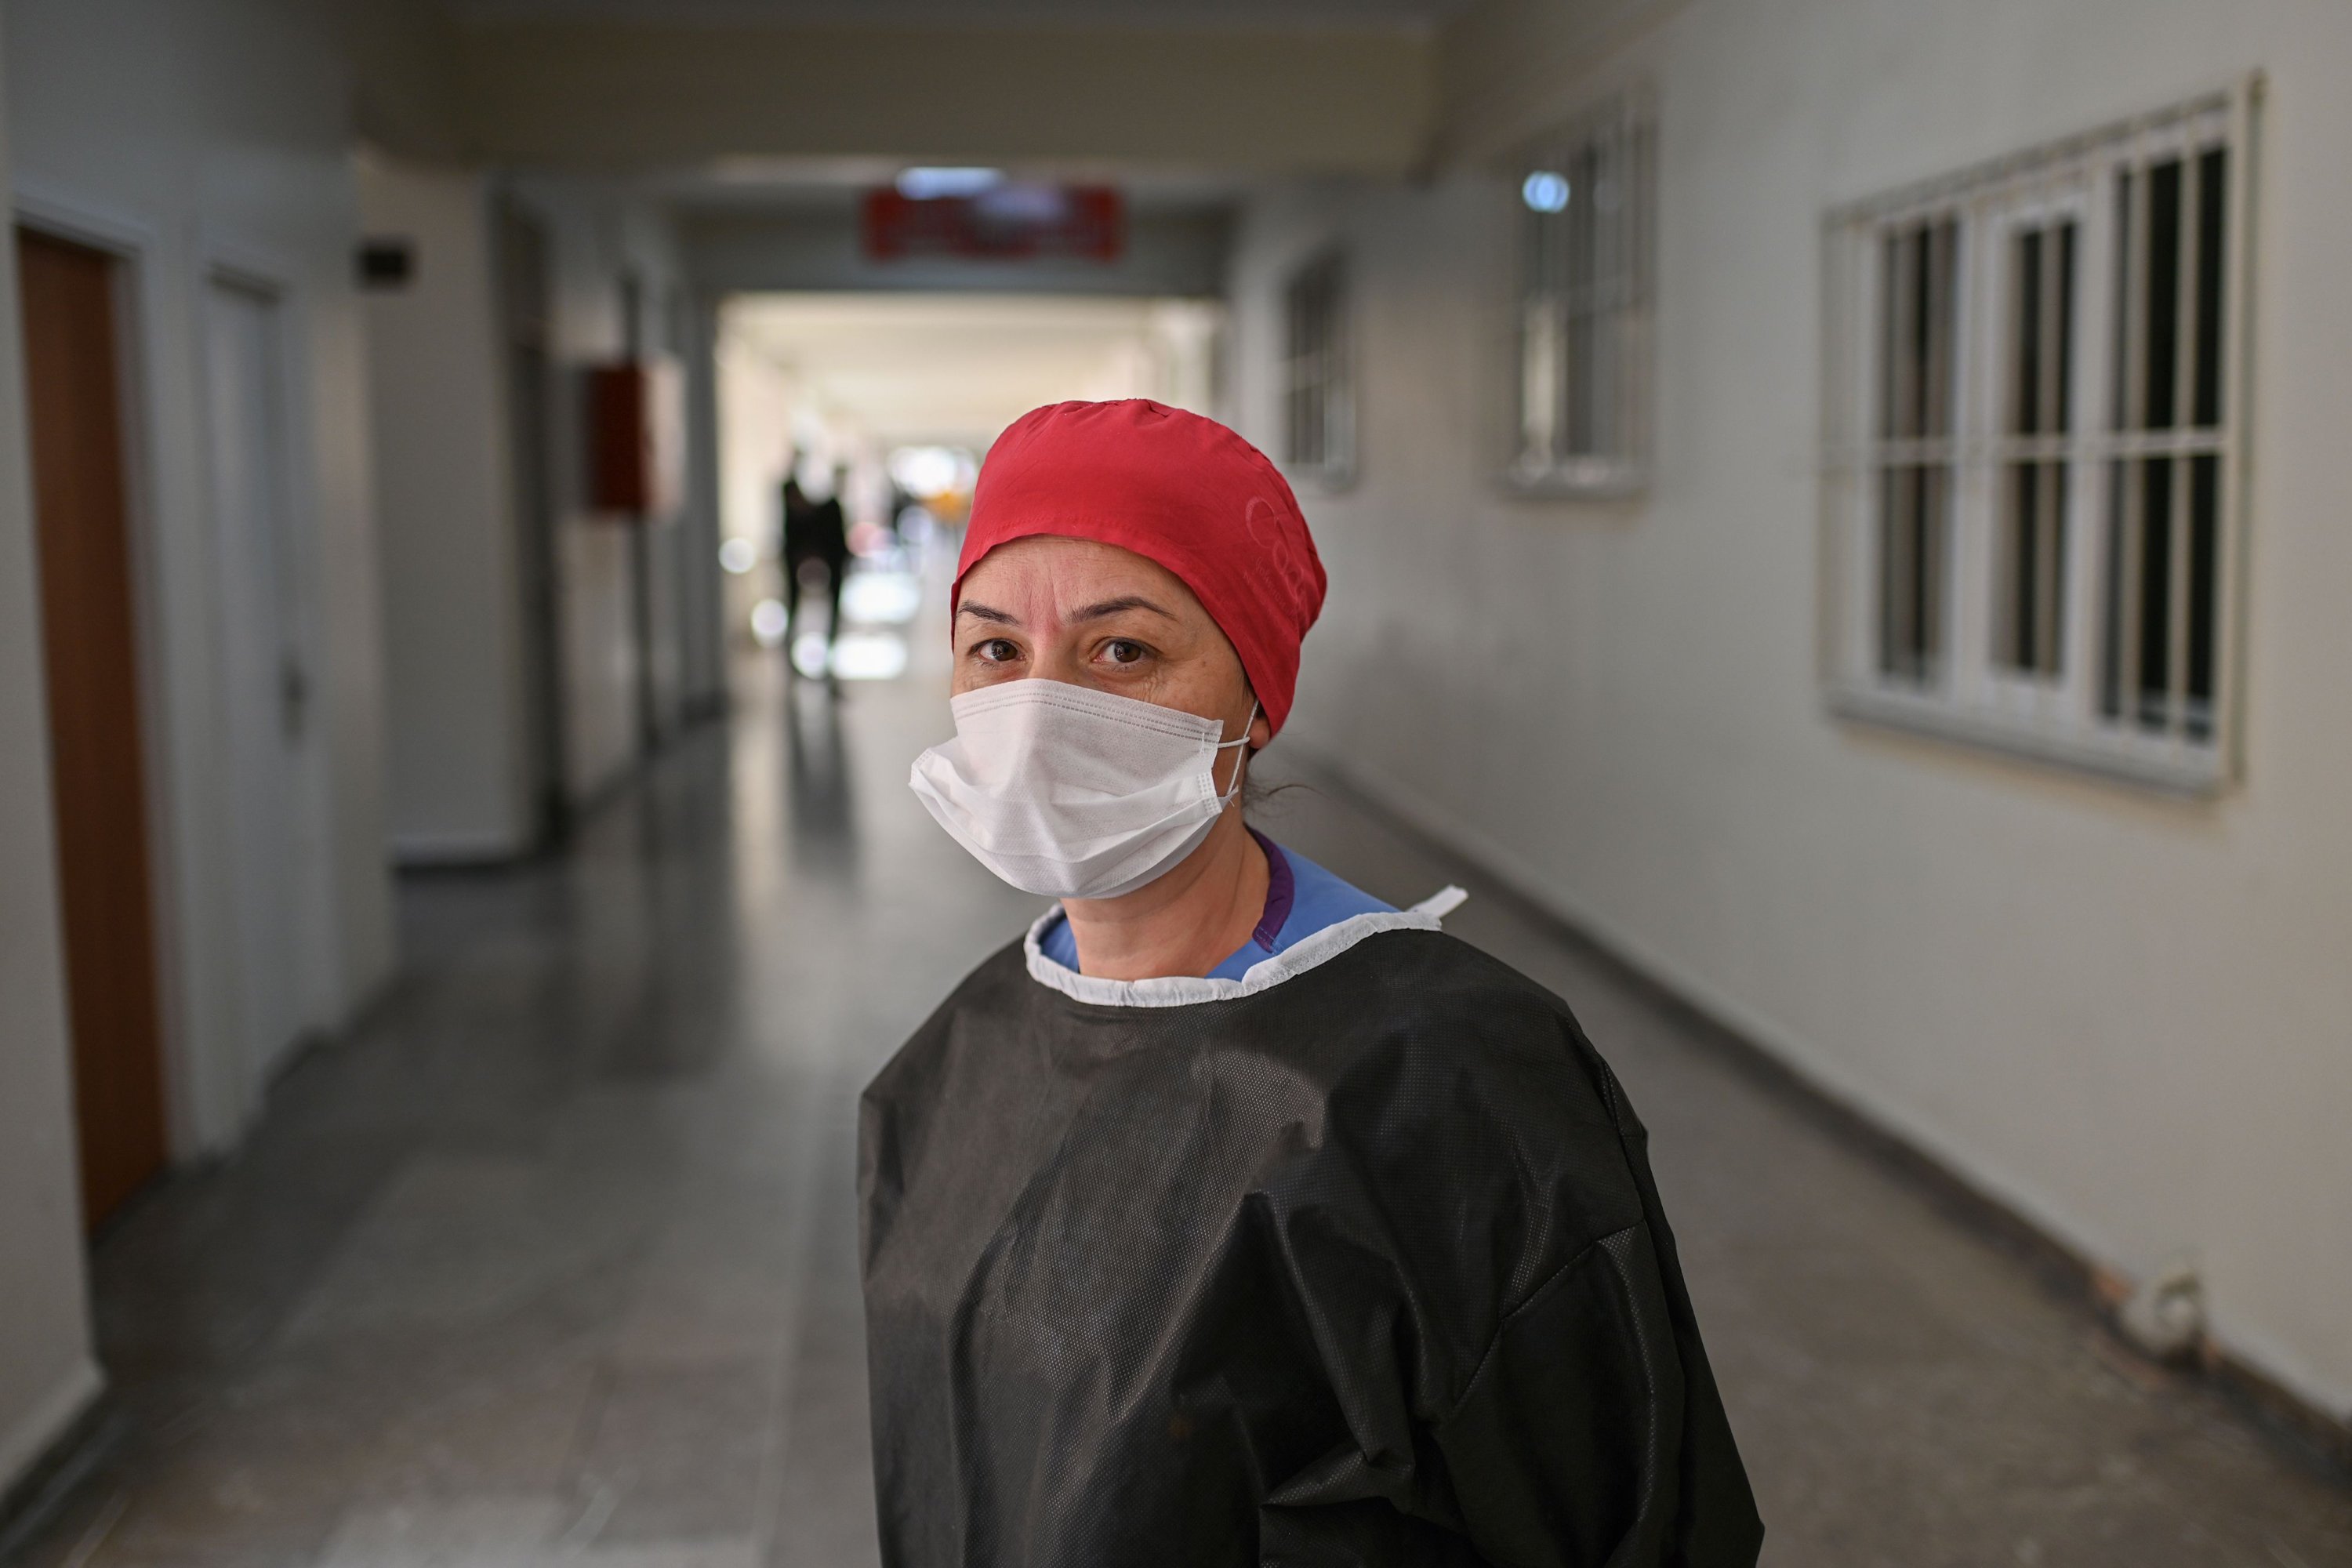   COVID-19 hastalarını tedavi eden baş hemşire Merve Pirecioğlu röportaj sırasında poz veriyor.